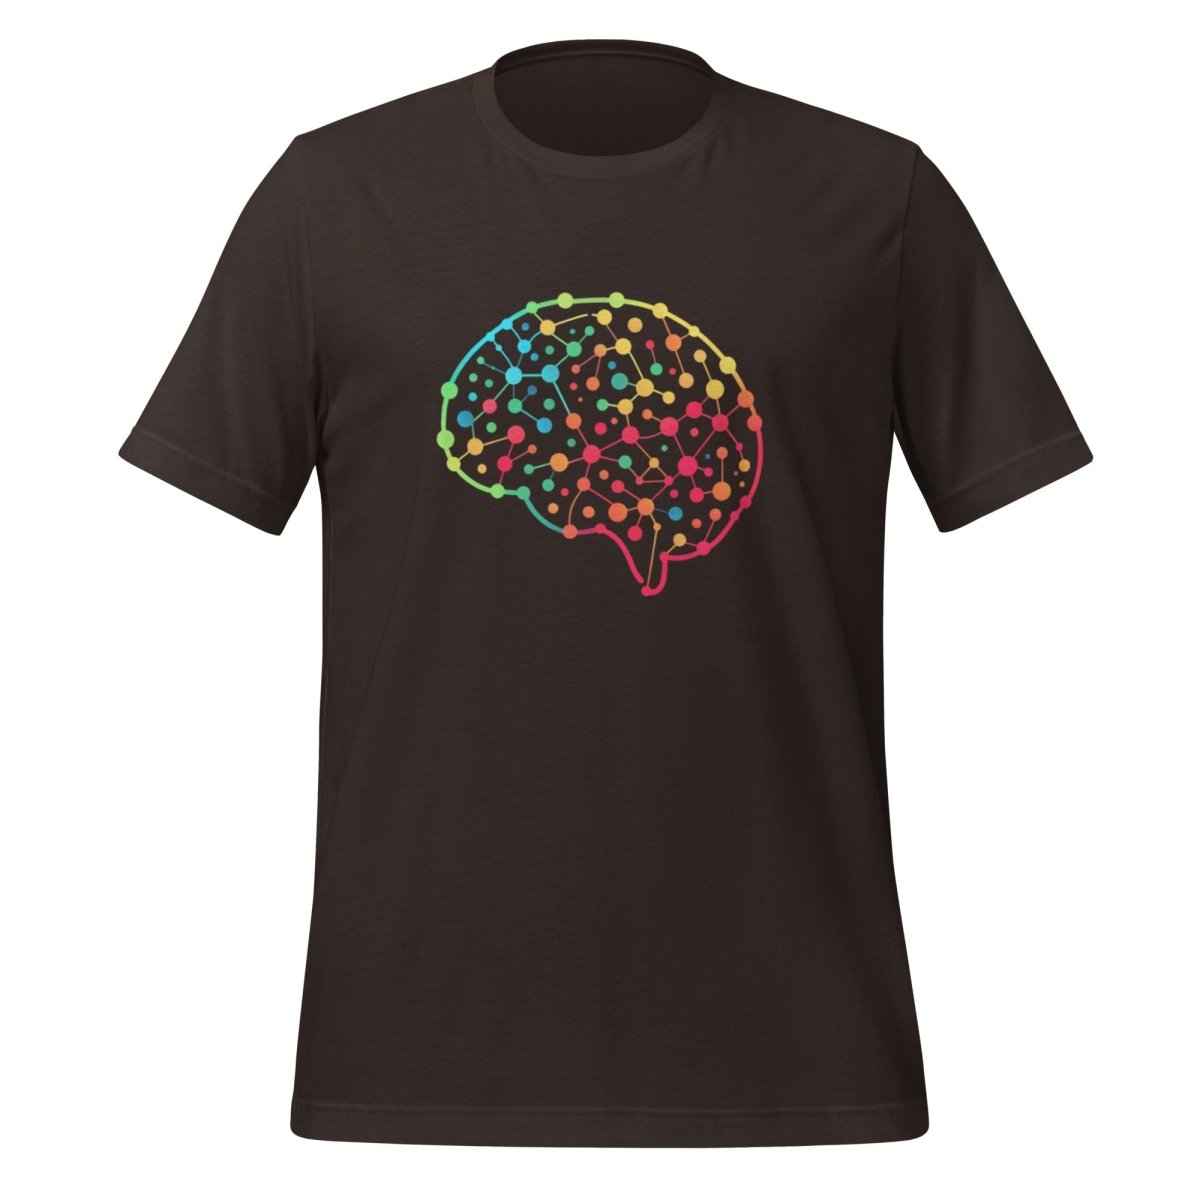 DALL - E Neural Network Brain T - Shirt (unisex) - Brown - AI Store